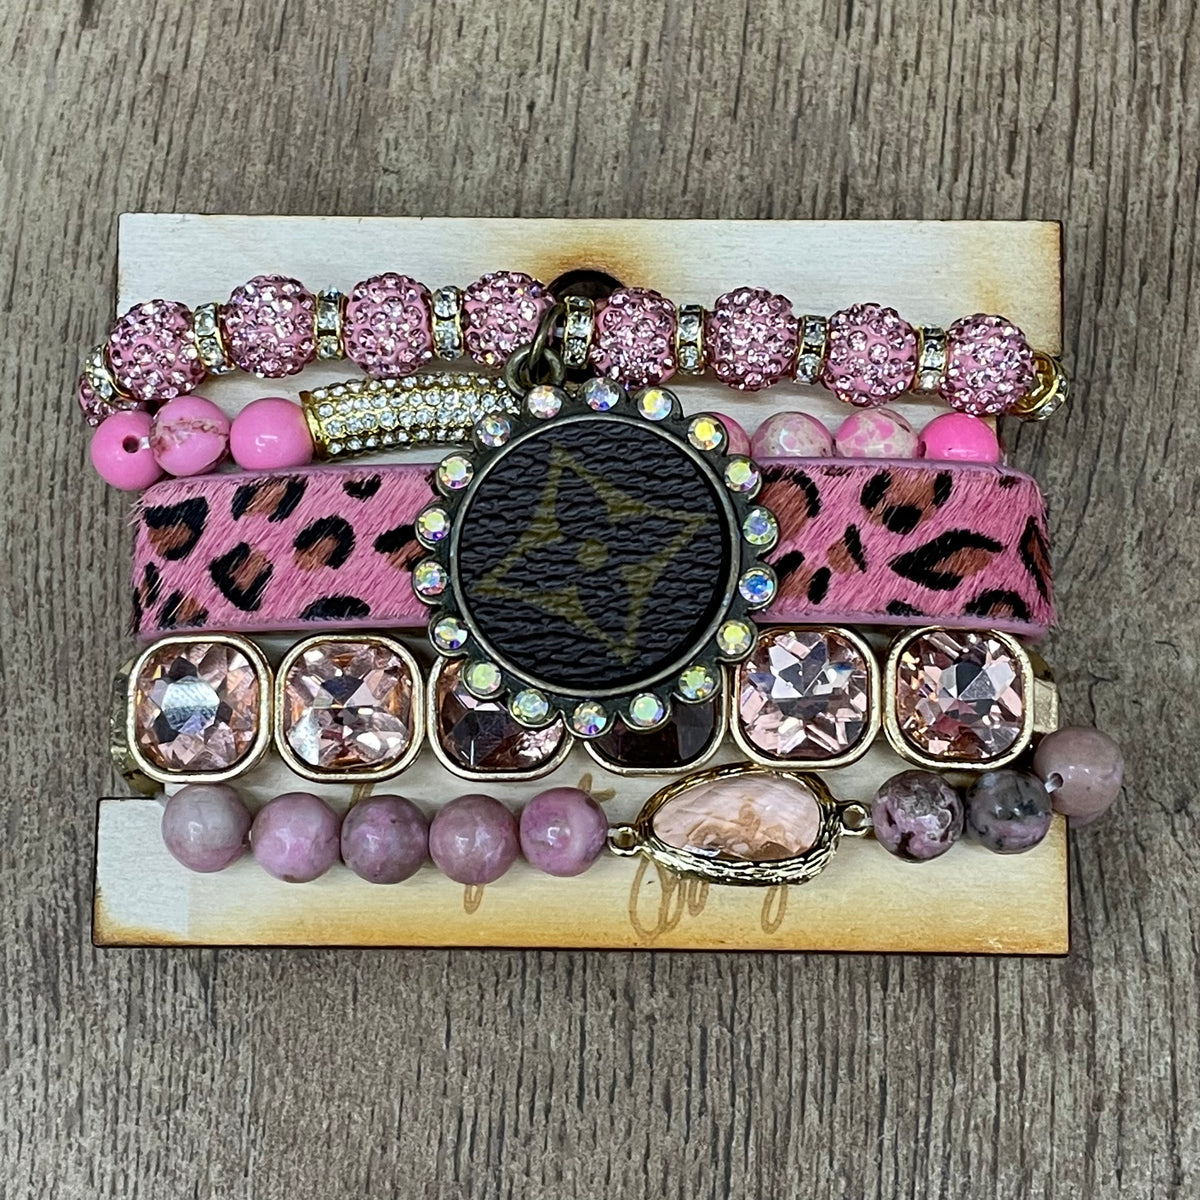 Gypsy LV 5 Strand Pink Cheetah Bracelet Set